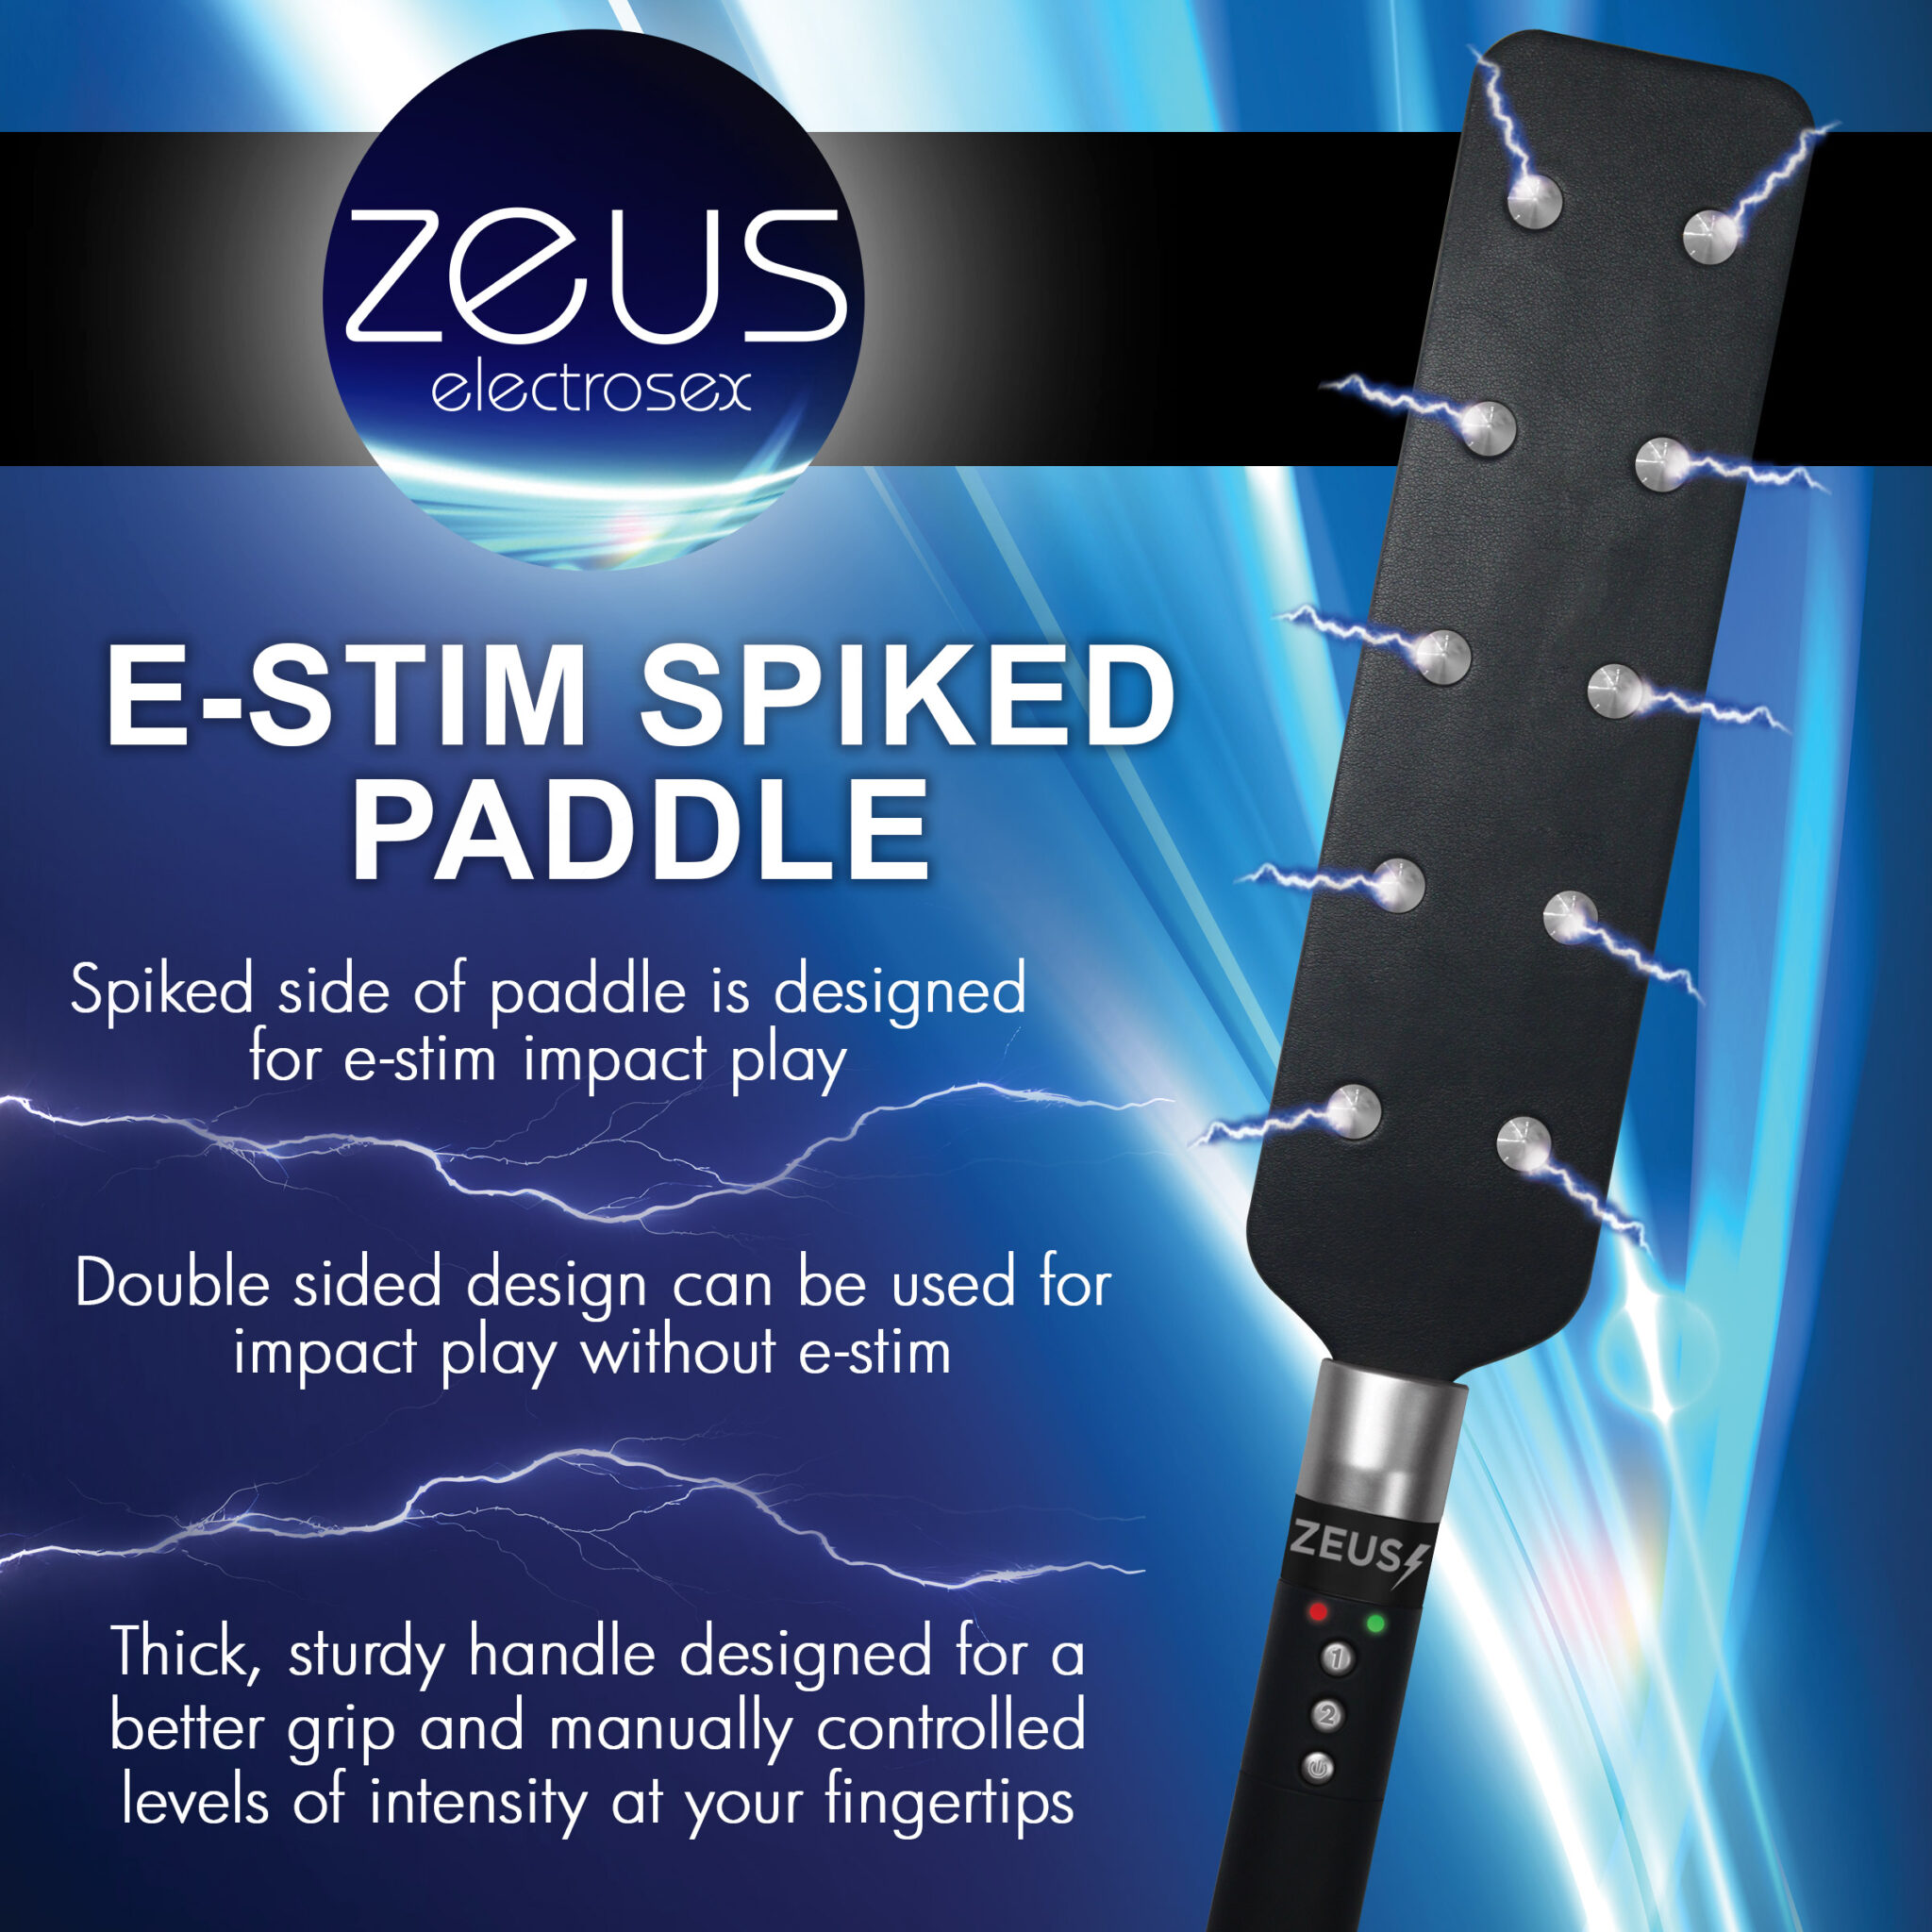 E-stim Spiked Paddle